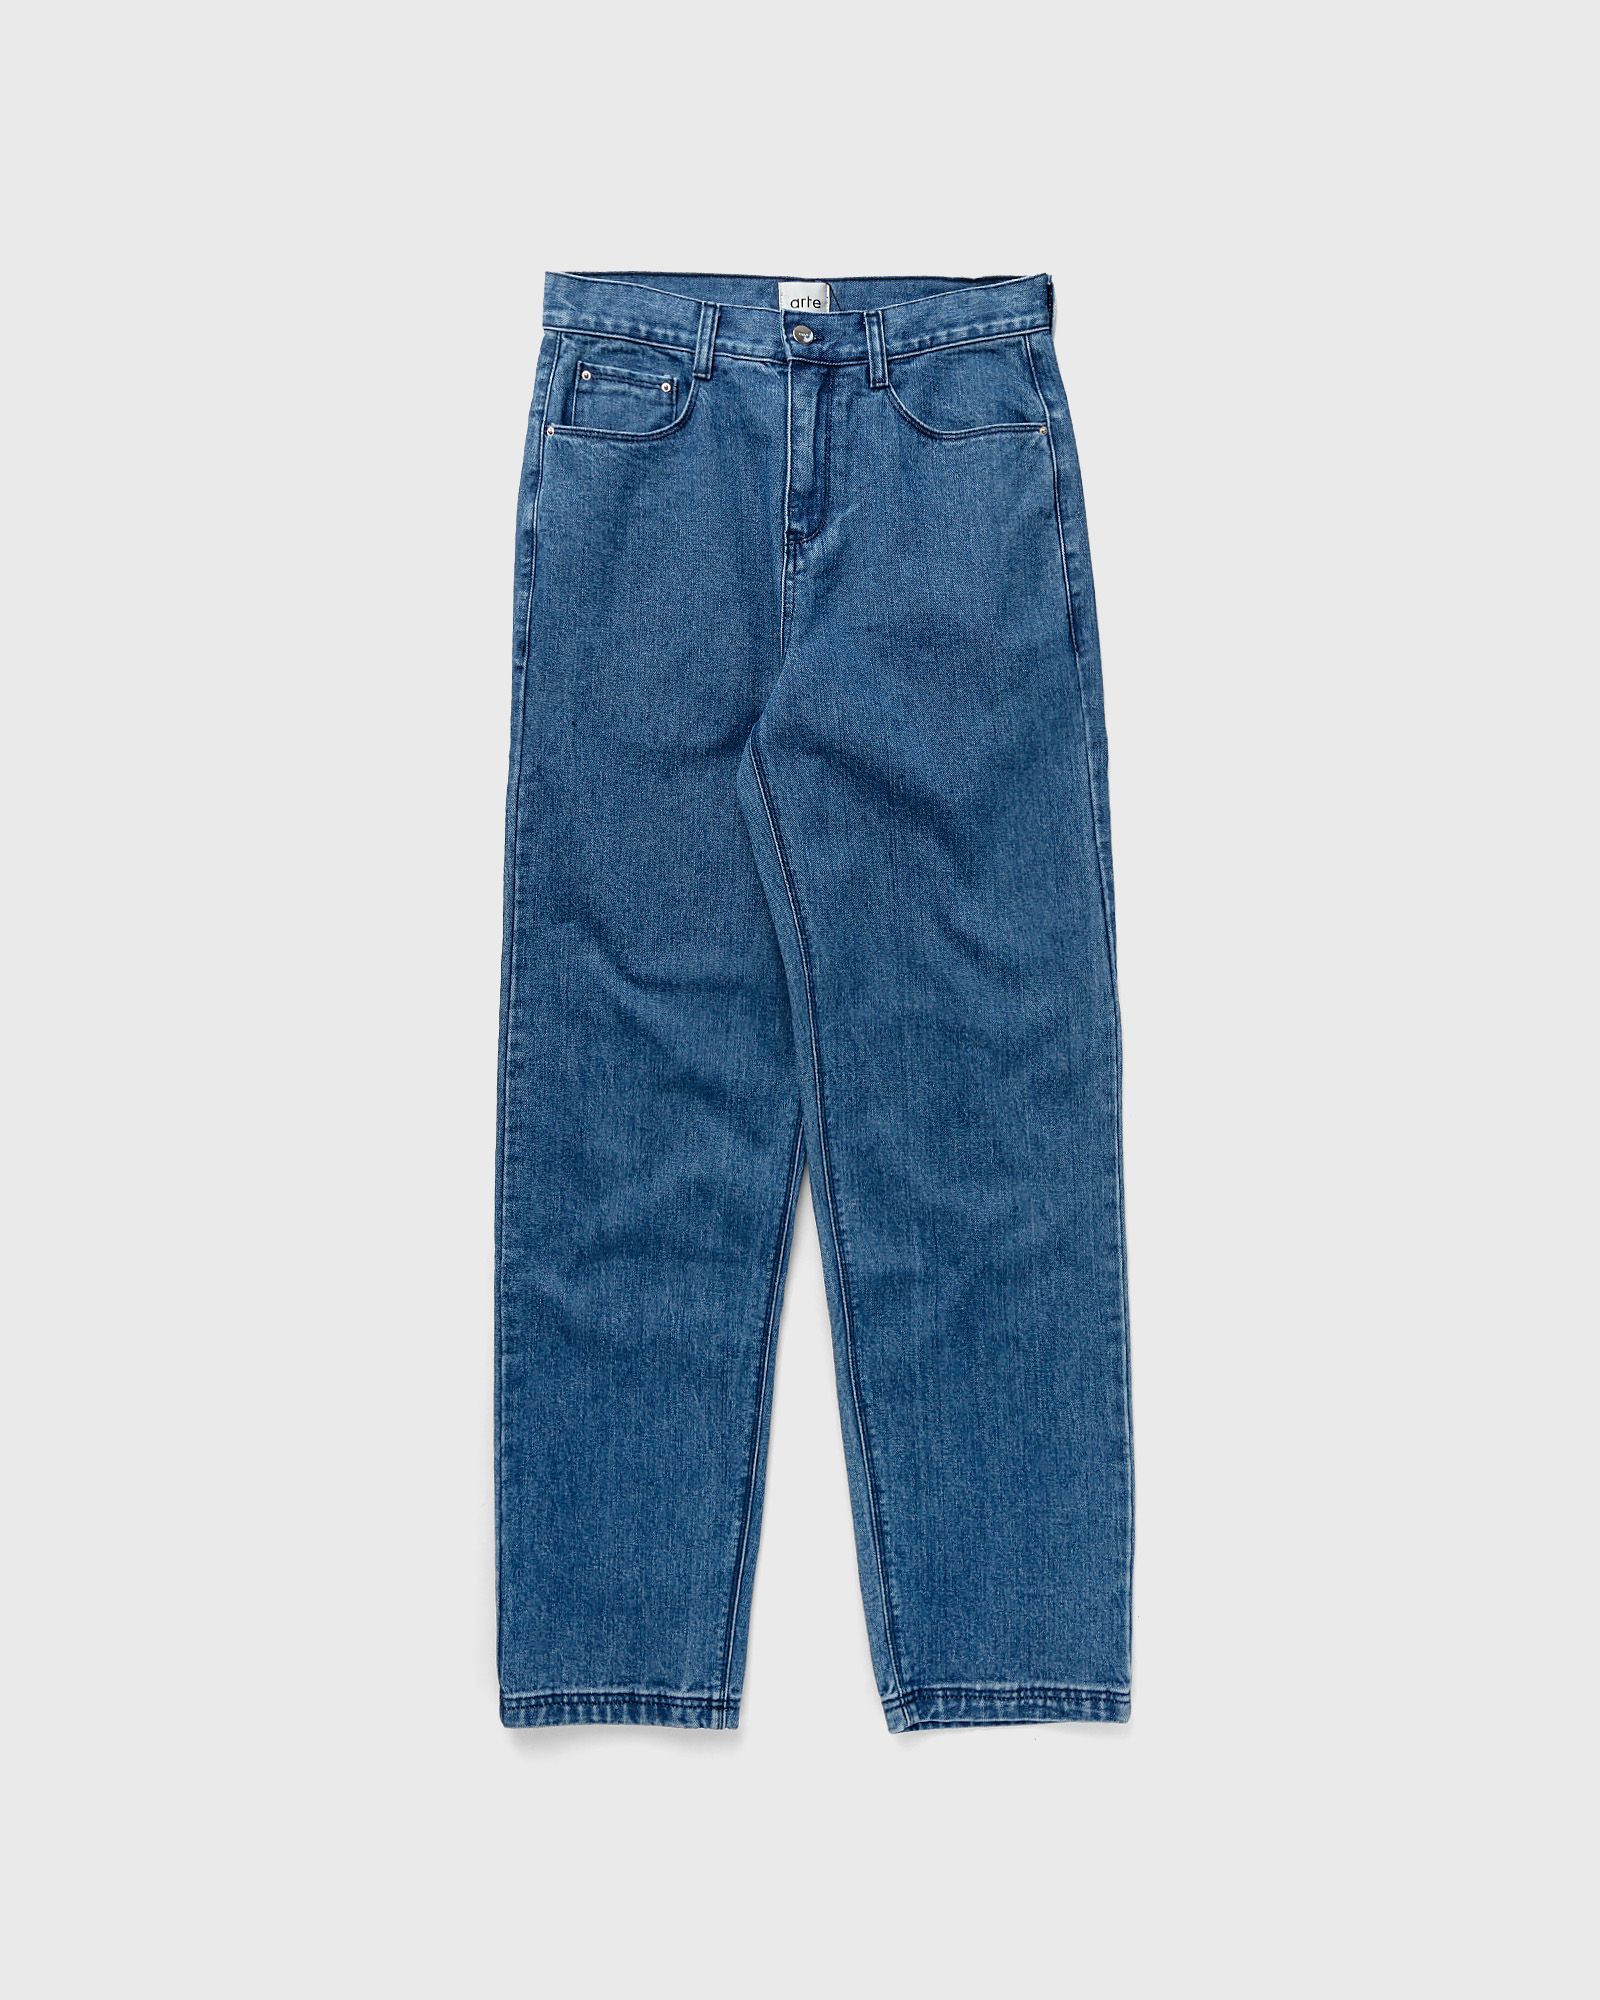 Arte Antwerp - paul pocket logo pants men jeans blue in größe:xxl